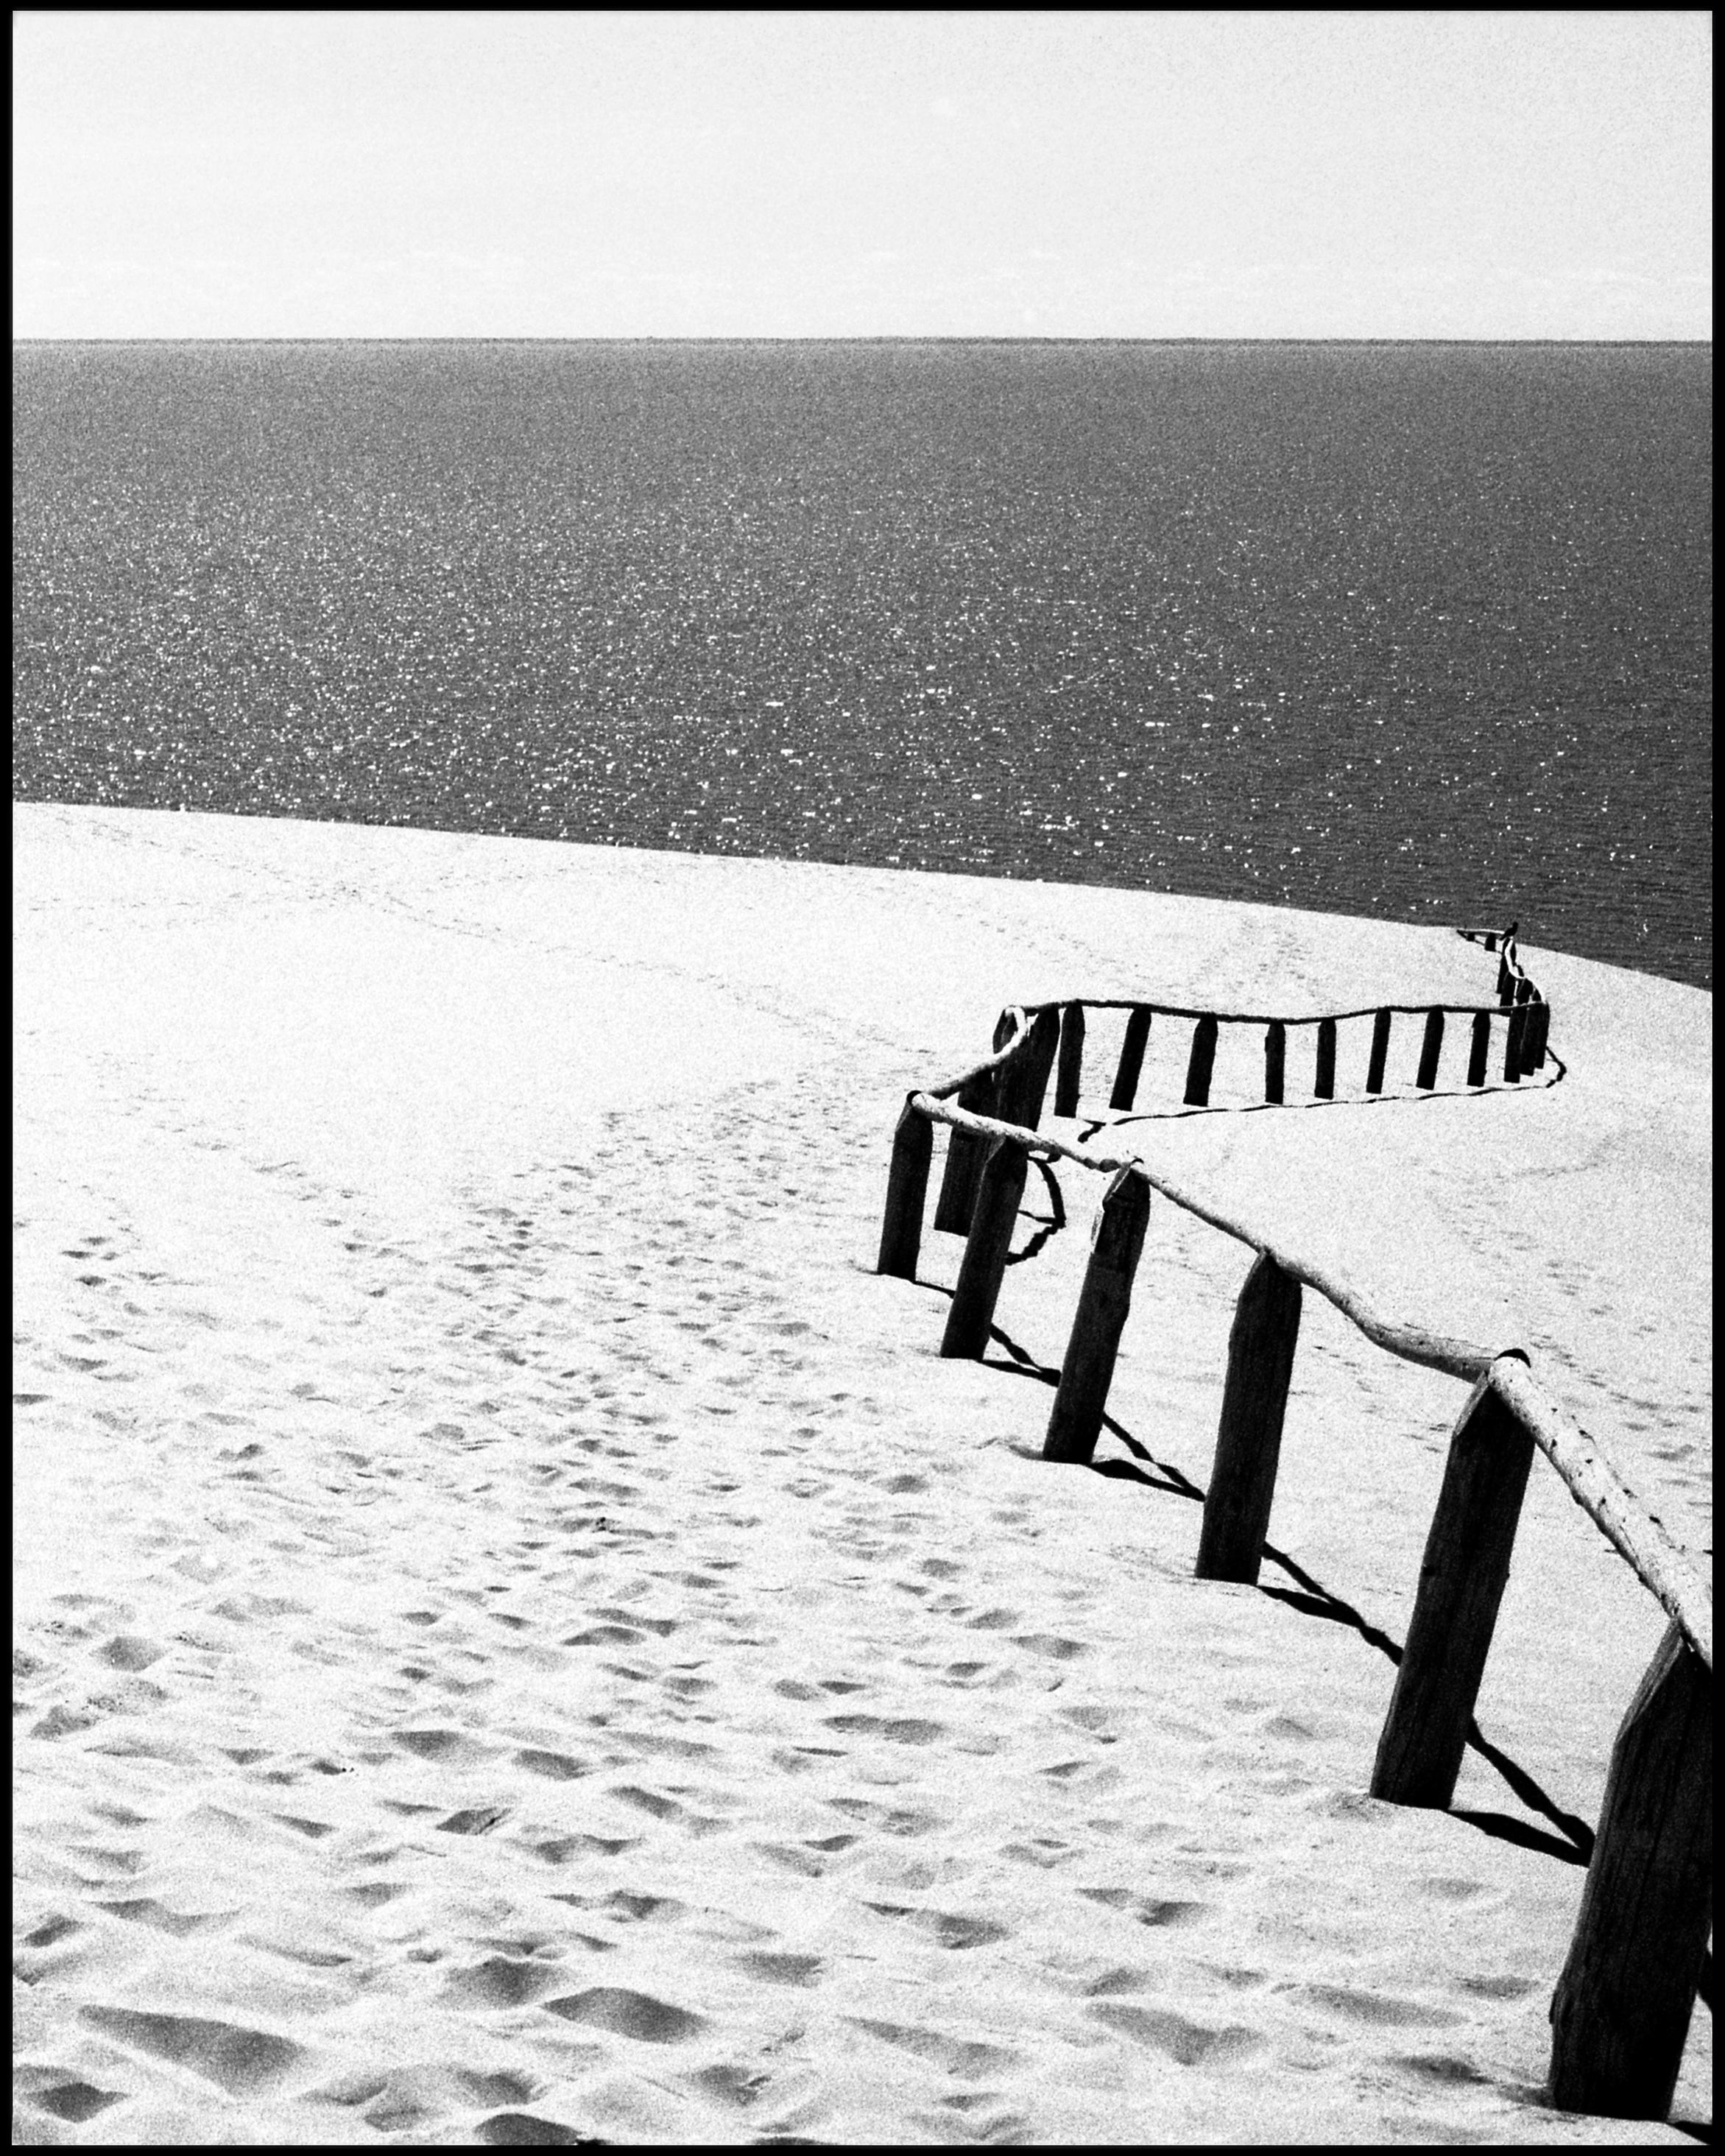 Nida – Schwarz-Weiß- Analogue-Fotografie von Sandünen und Baltischem Meer